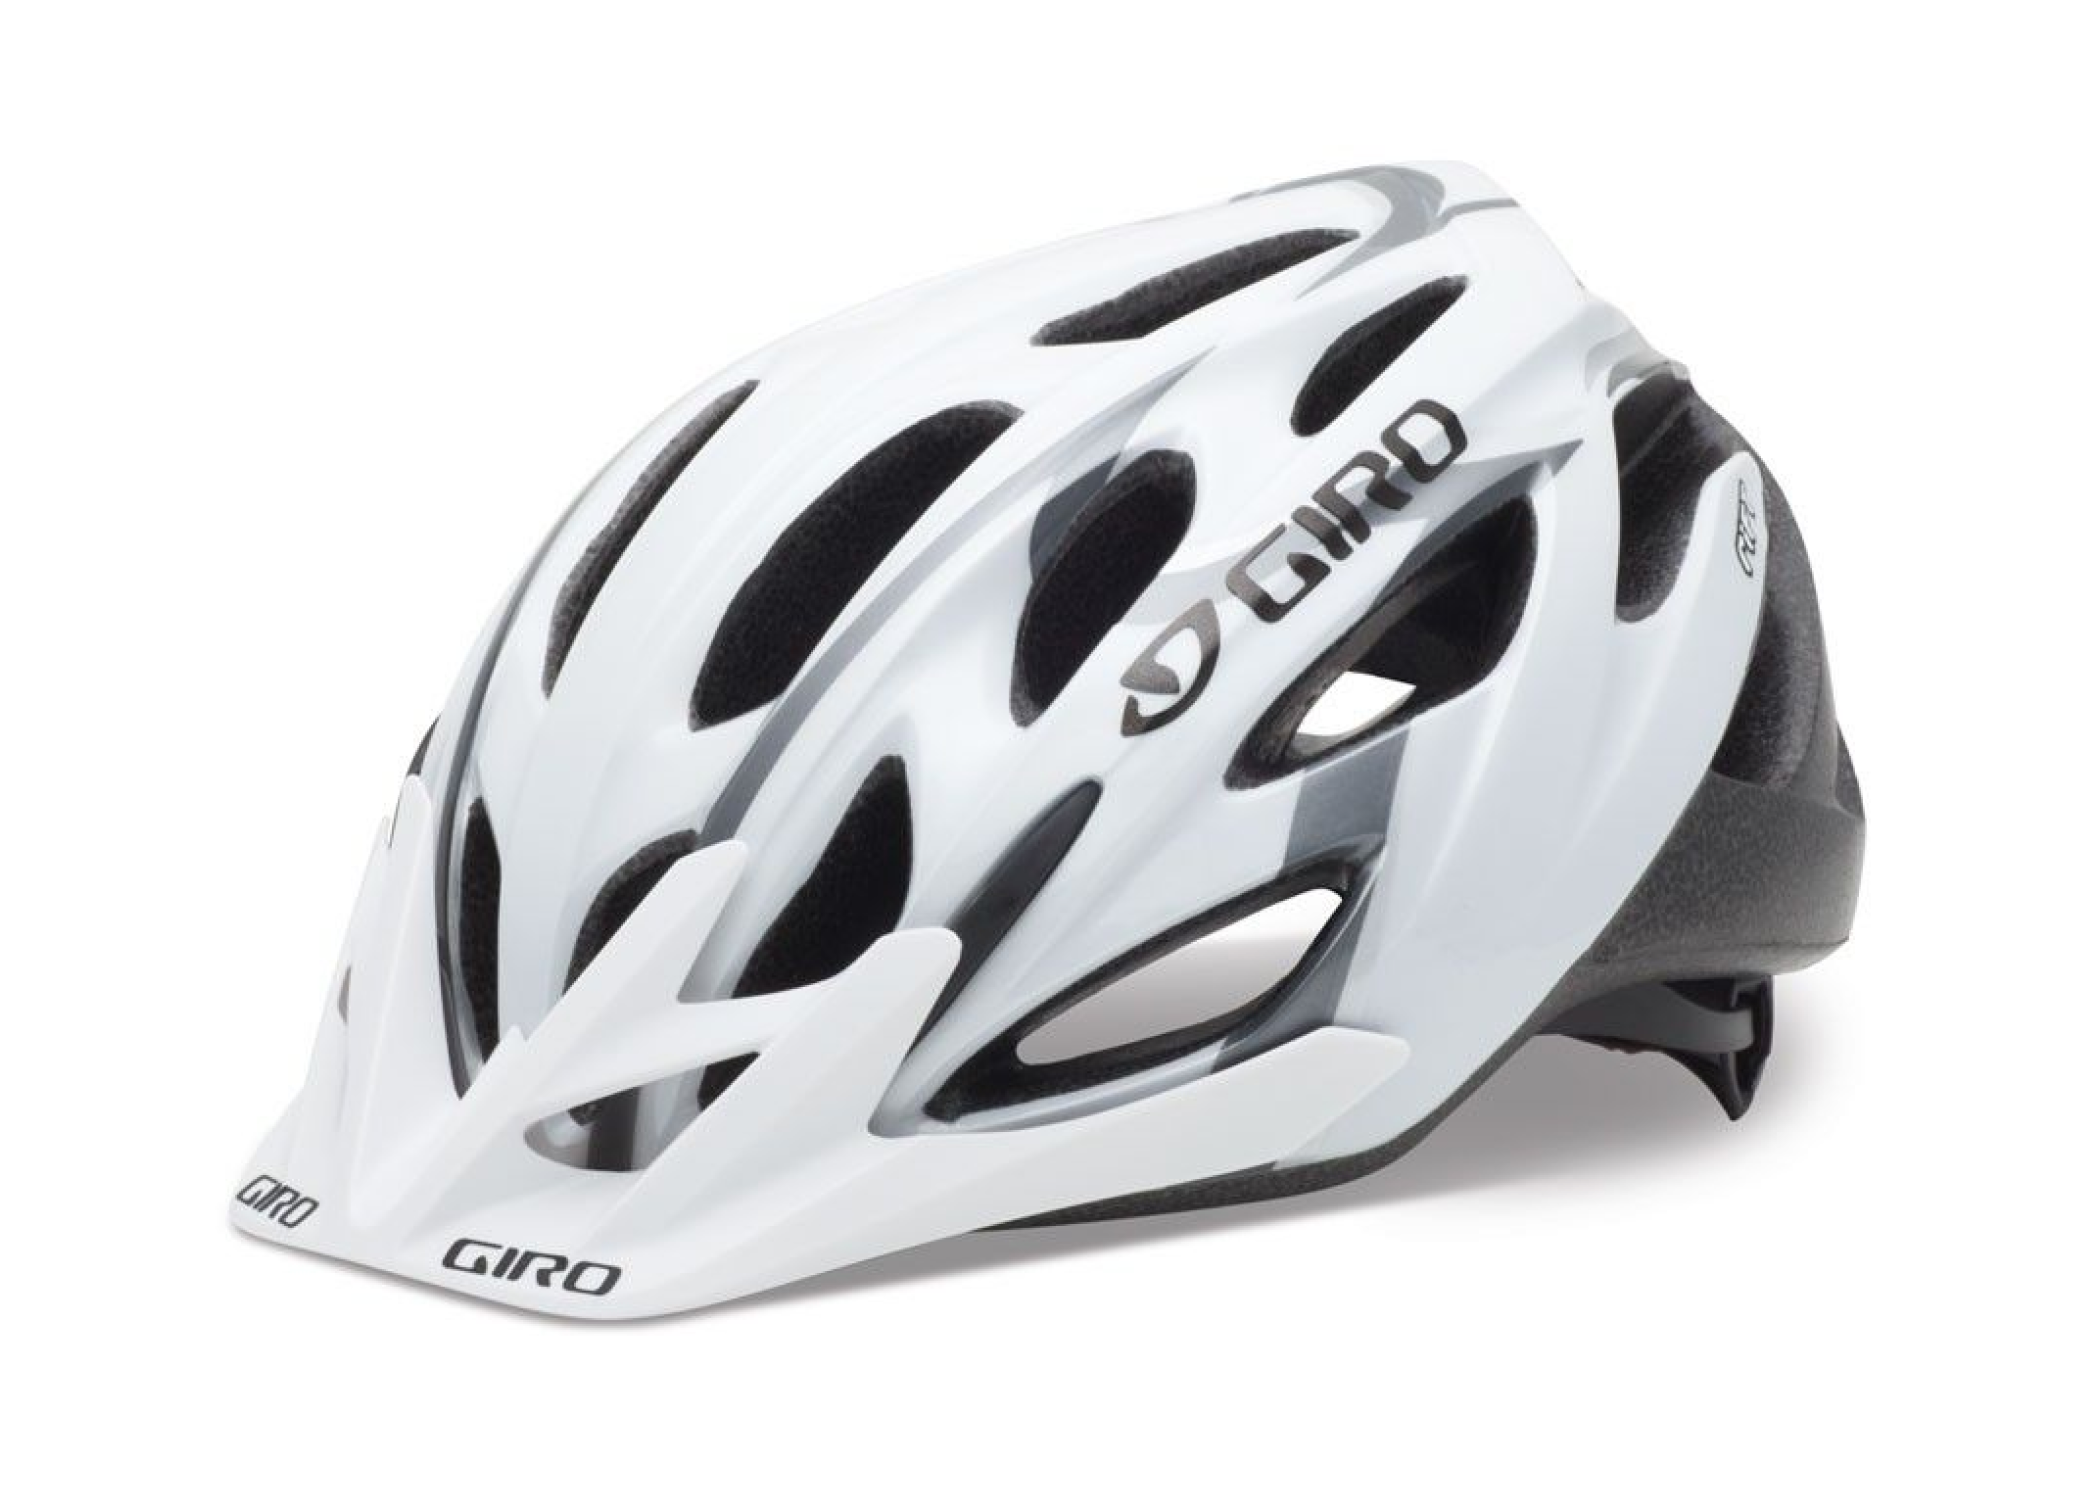 Giro Rift Helmet –– designed by Kyle Ellison, founder of Trailside Creative.